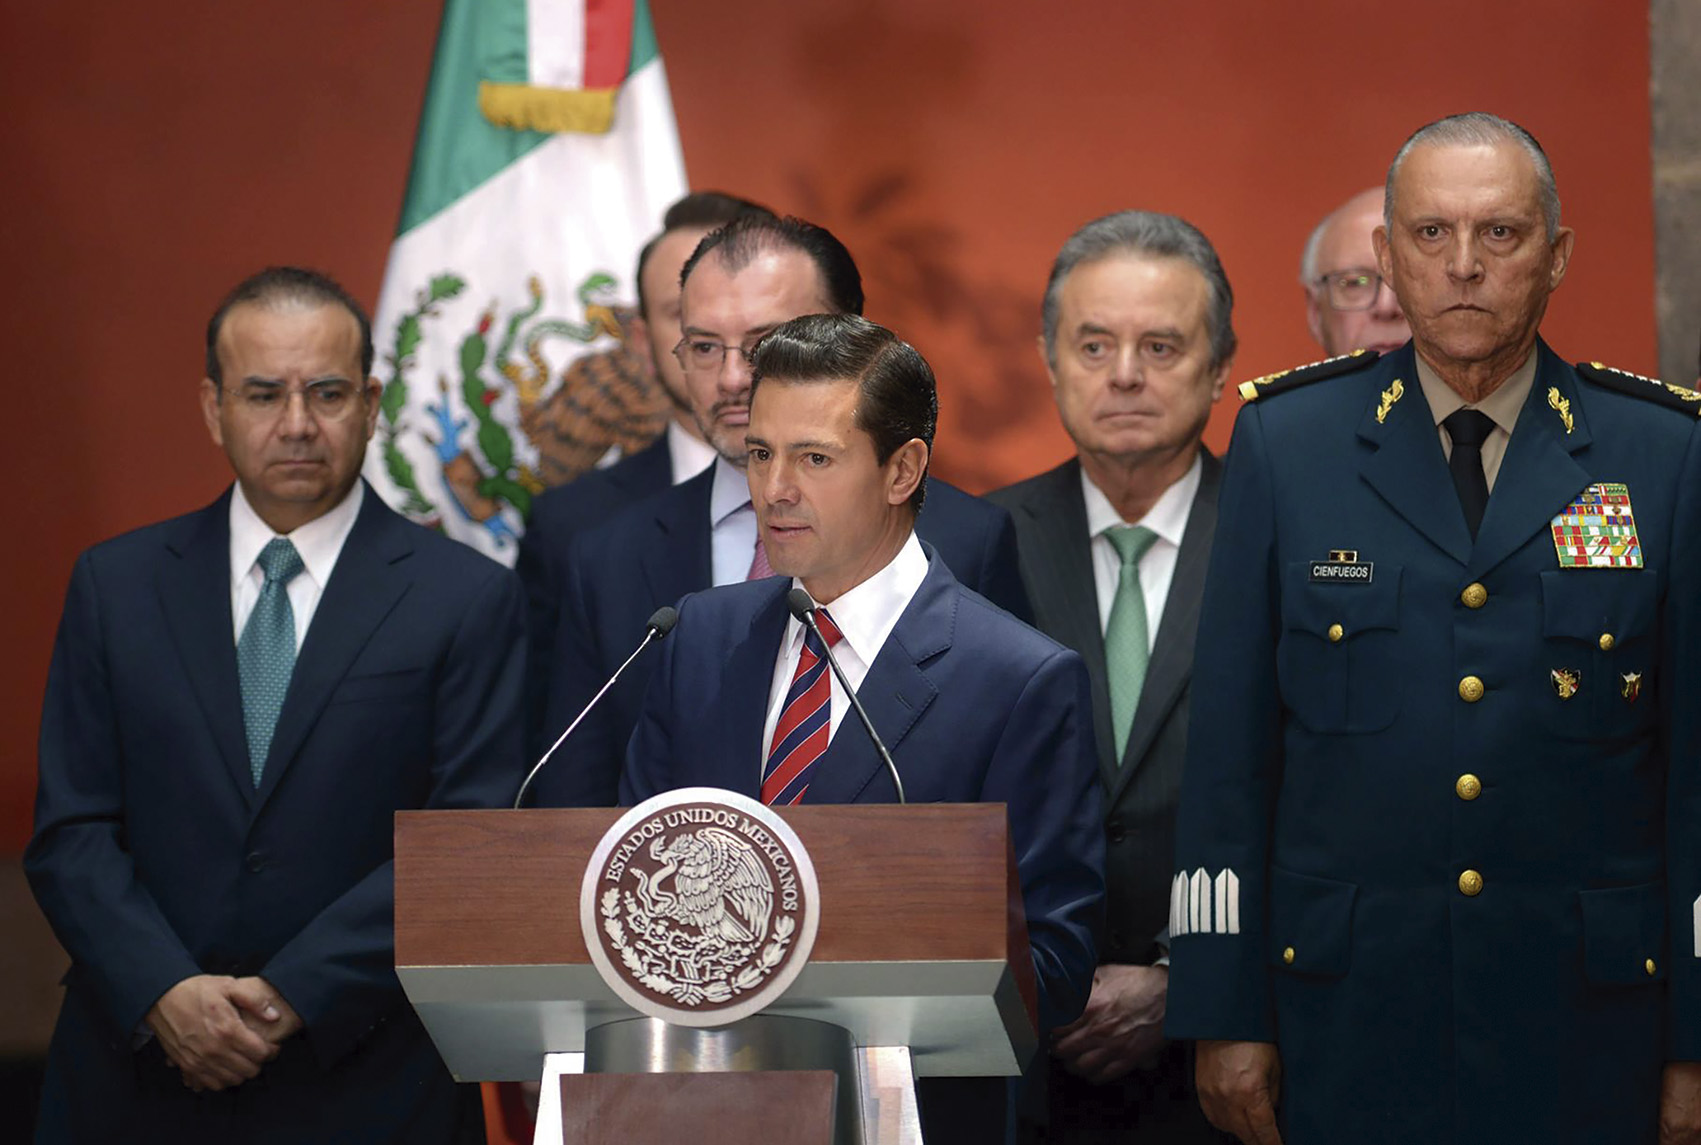 Photo of “Nuestro objetivo es servir a México, aunque tengamos puntos de vista diferentes”: Presidente Enrique Peña Nieto